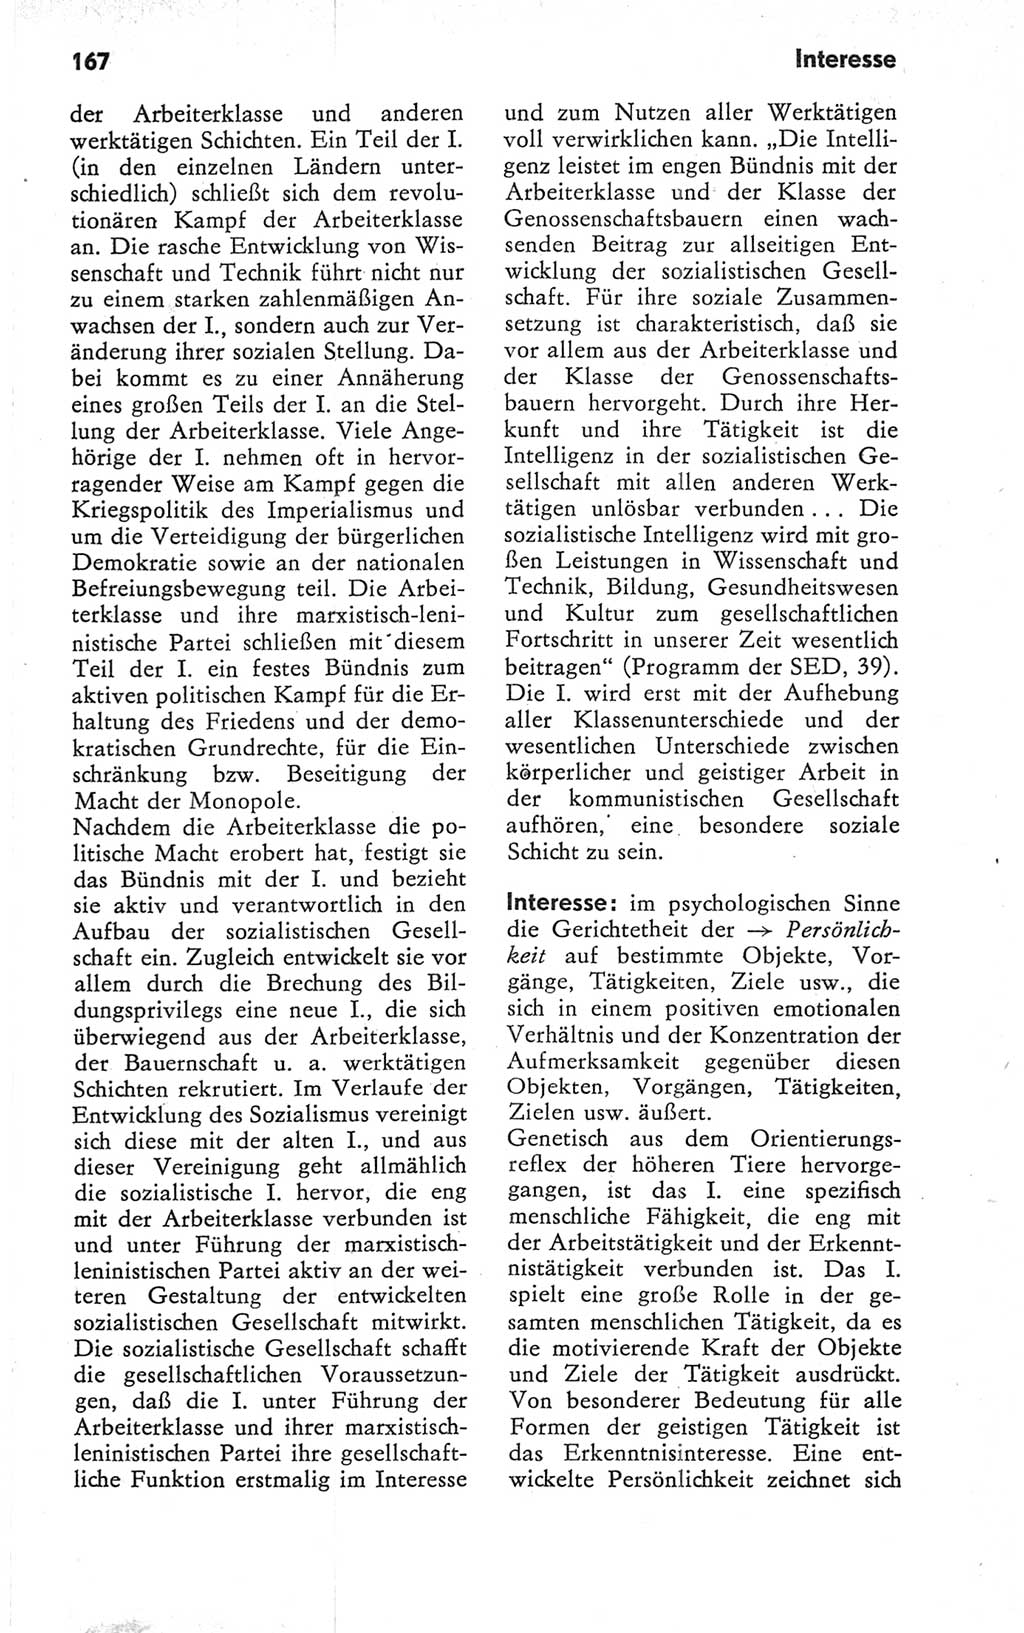 Kleines Wörterbuch der marxistisch-leninistischen Philosophie [Deutsche Demokratische Republik (DDR)] 1979, Seite 167 (Kl. Wb. ML Phil. DDR 1979, S. 167)